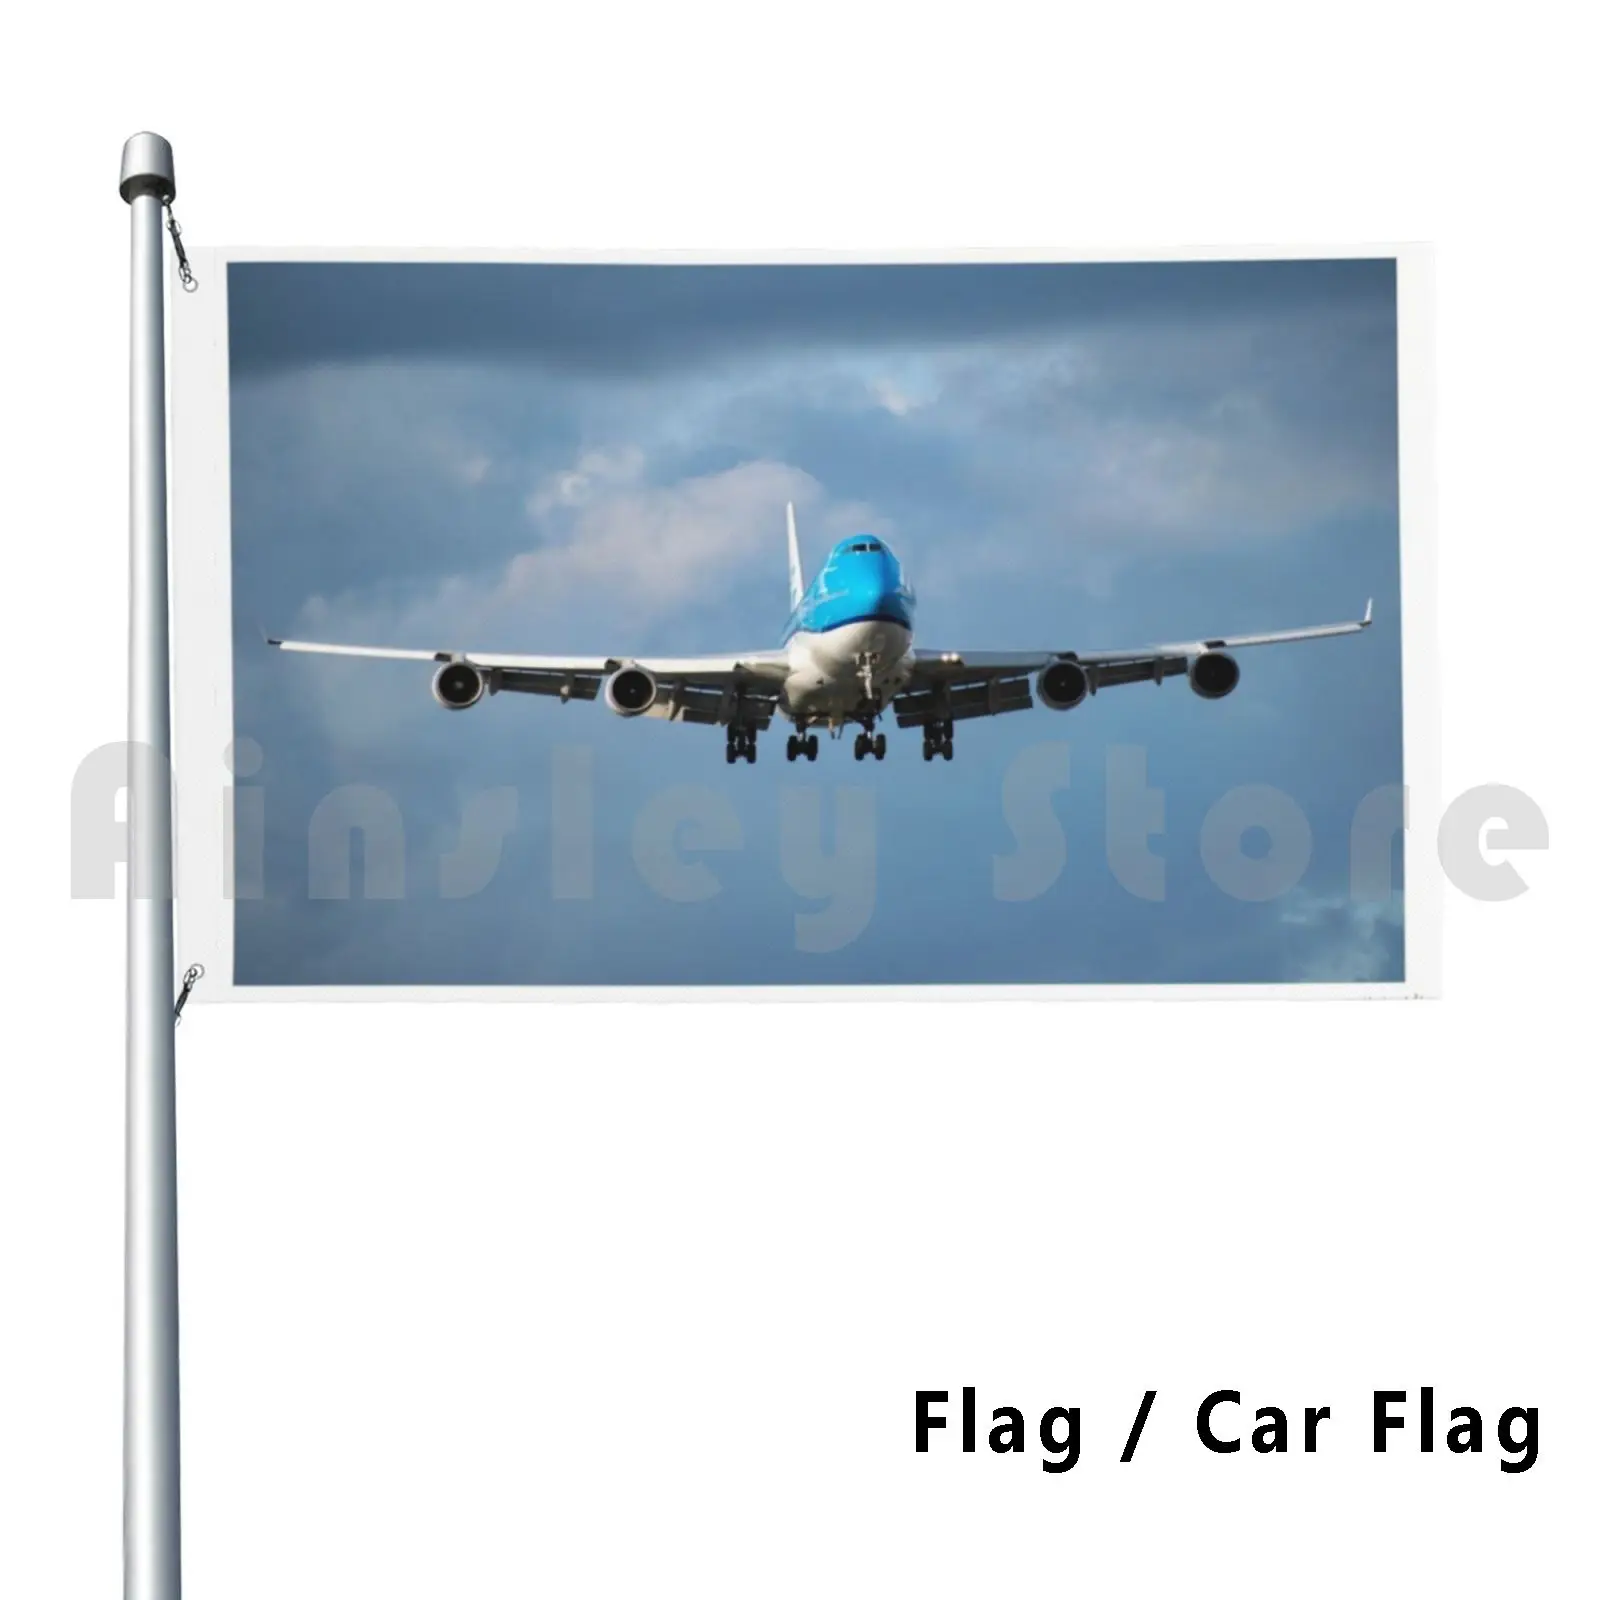 Klm 747-400 насадка на носу для украшения улицы флаг автомобиля 747 400 летающего